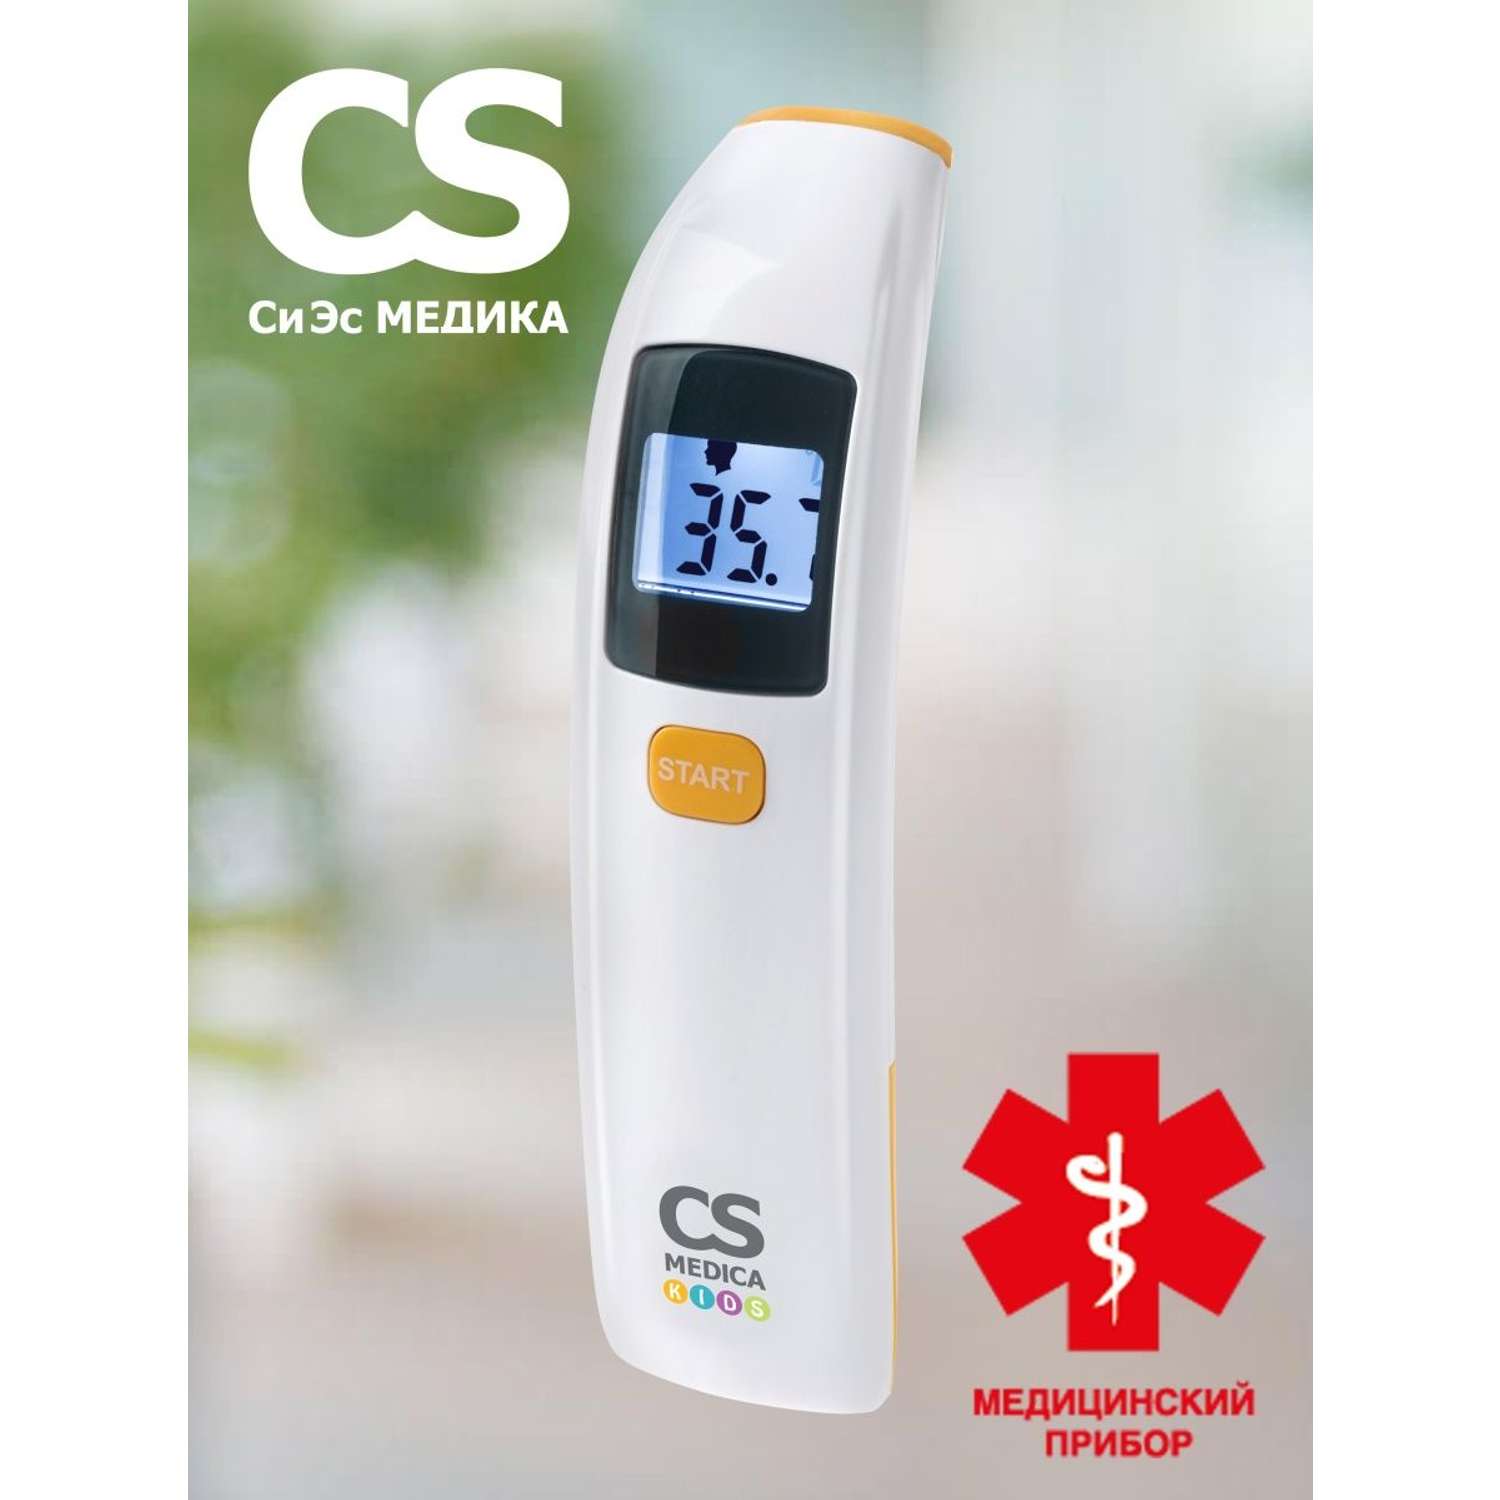 Инфракрасный термометр CS MEDICA KIDS CS-88 - фото 1